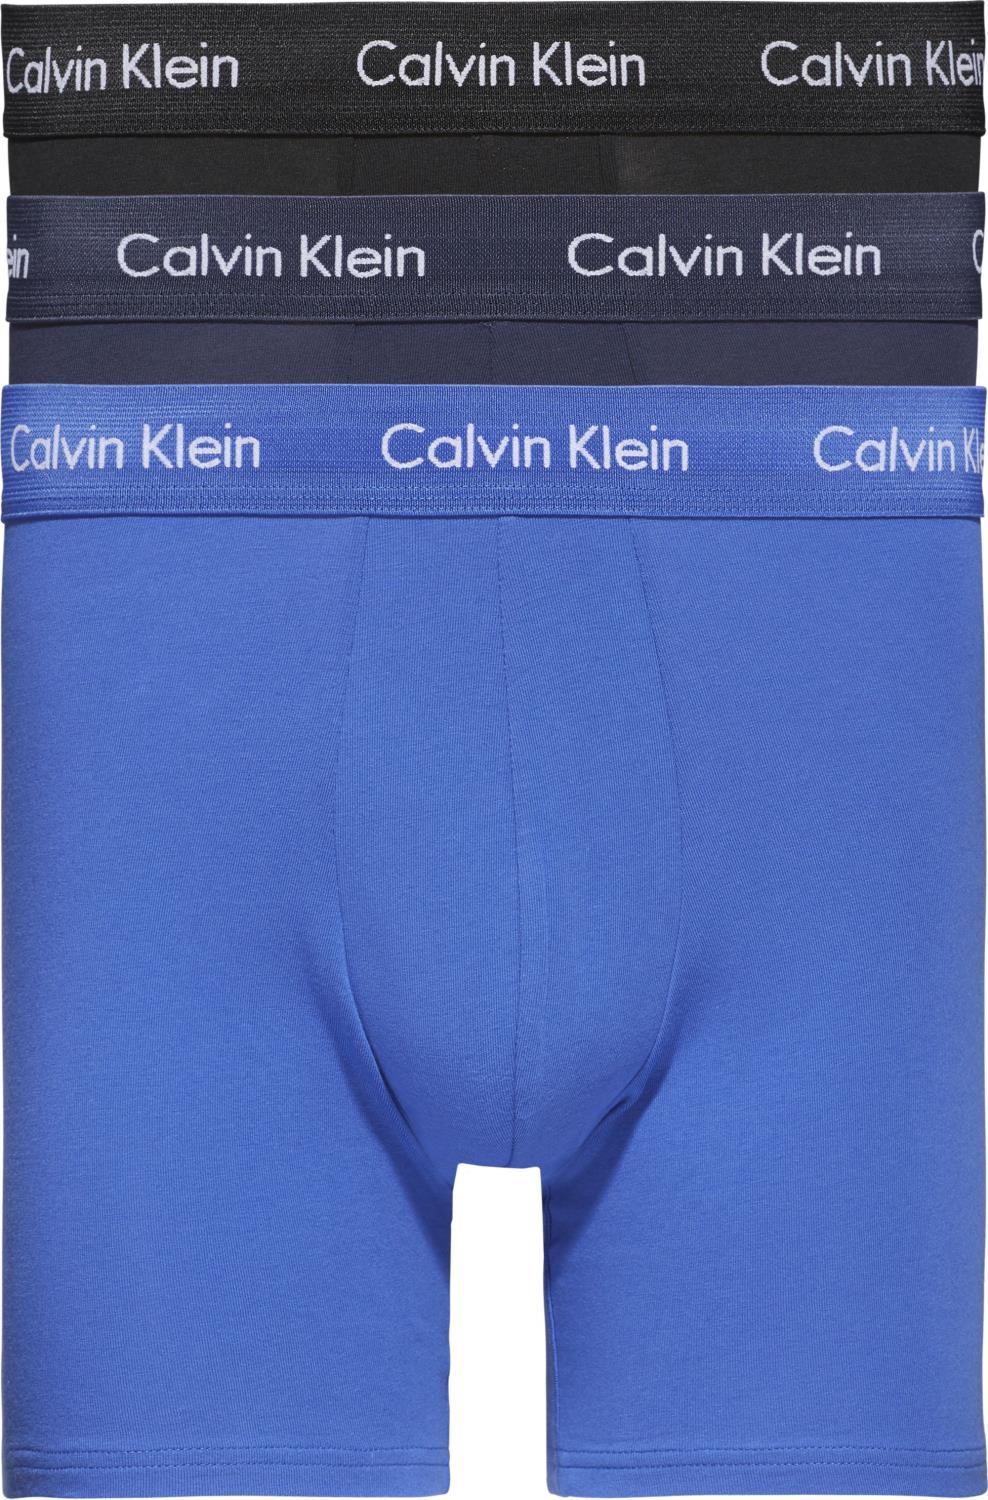 Calvin Klein 3pk. Boxer Brief Sort/Blå/Marine